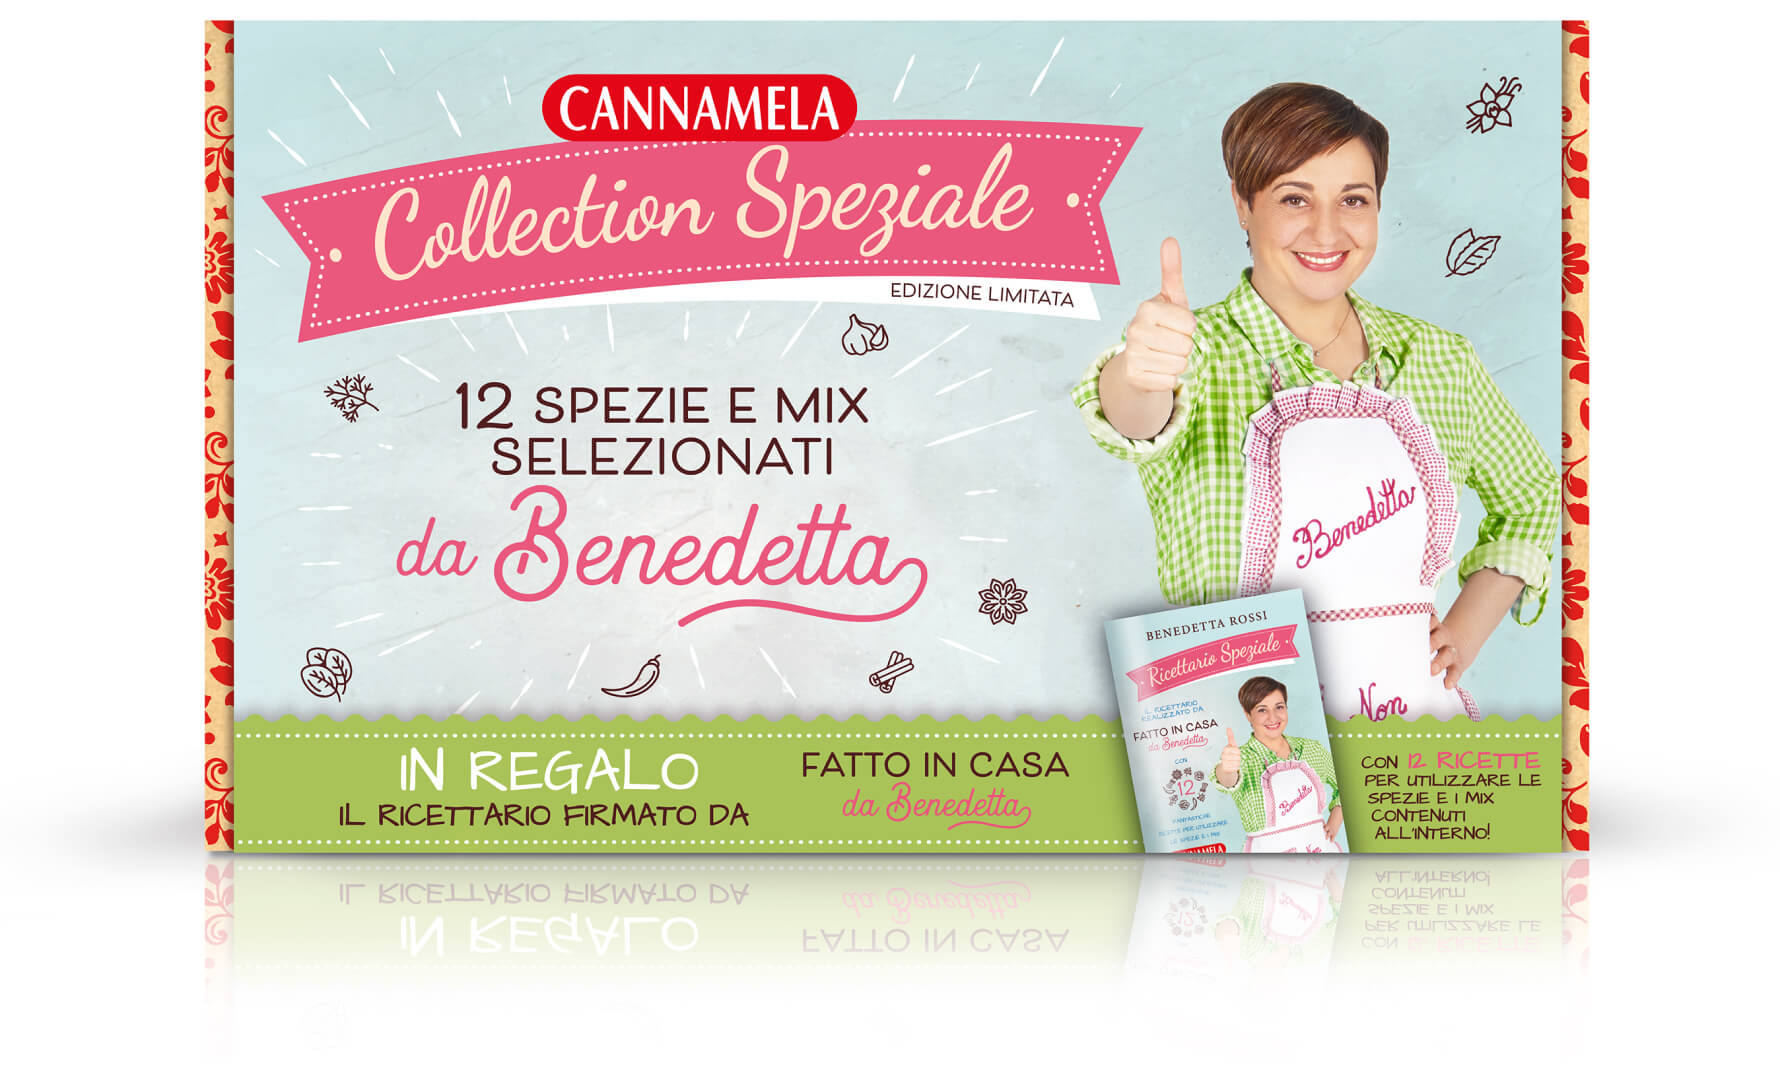 Collection speziale - Cannamela